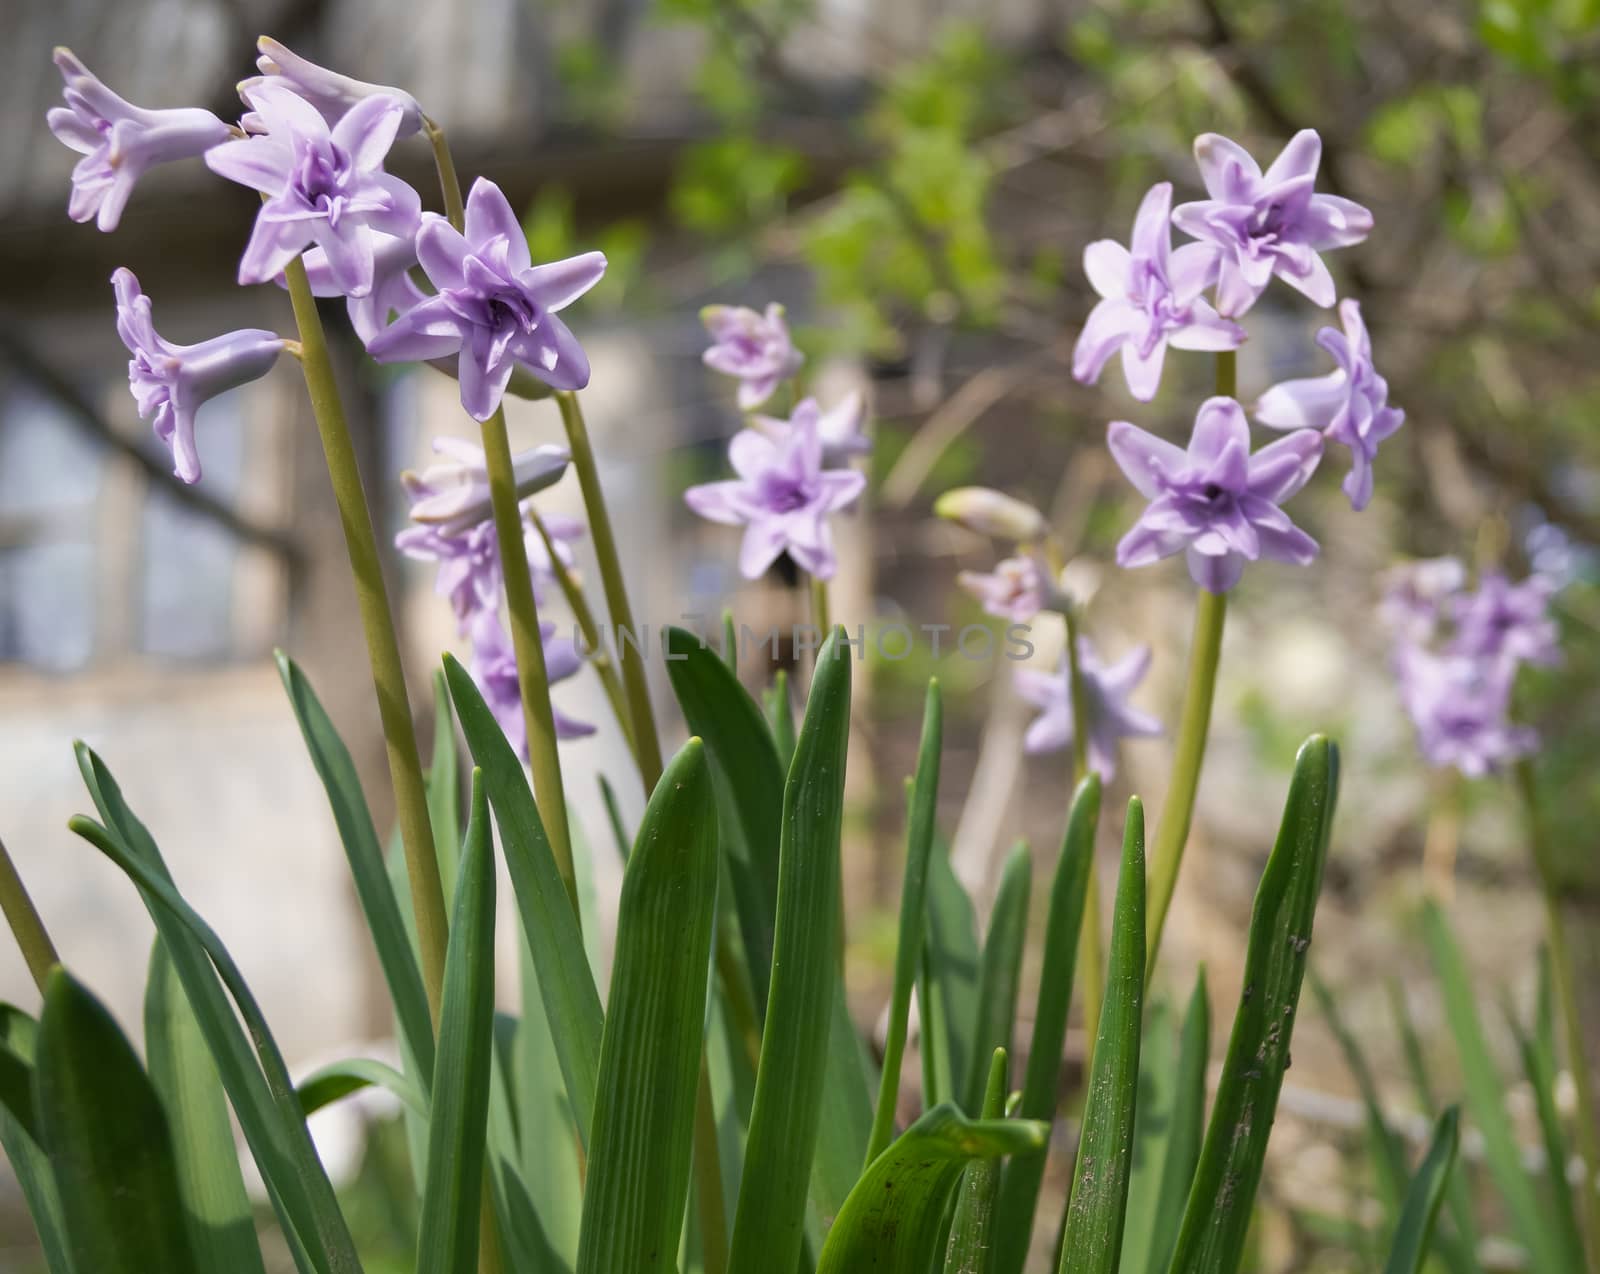 purple hyacinths in the garden by Oleczka11